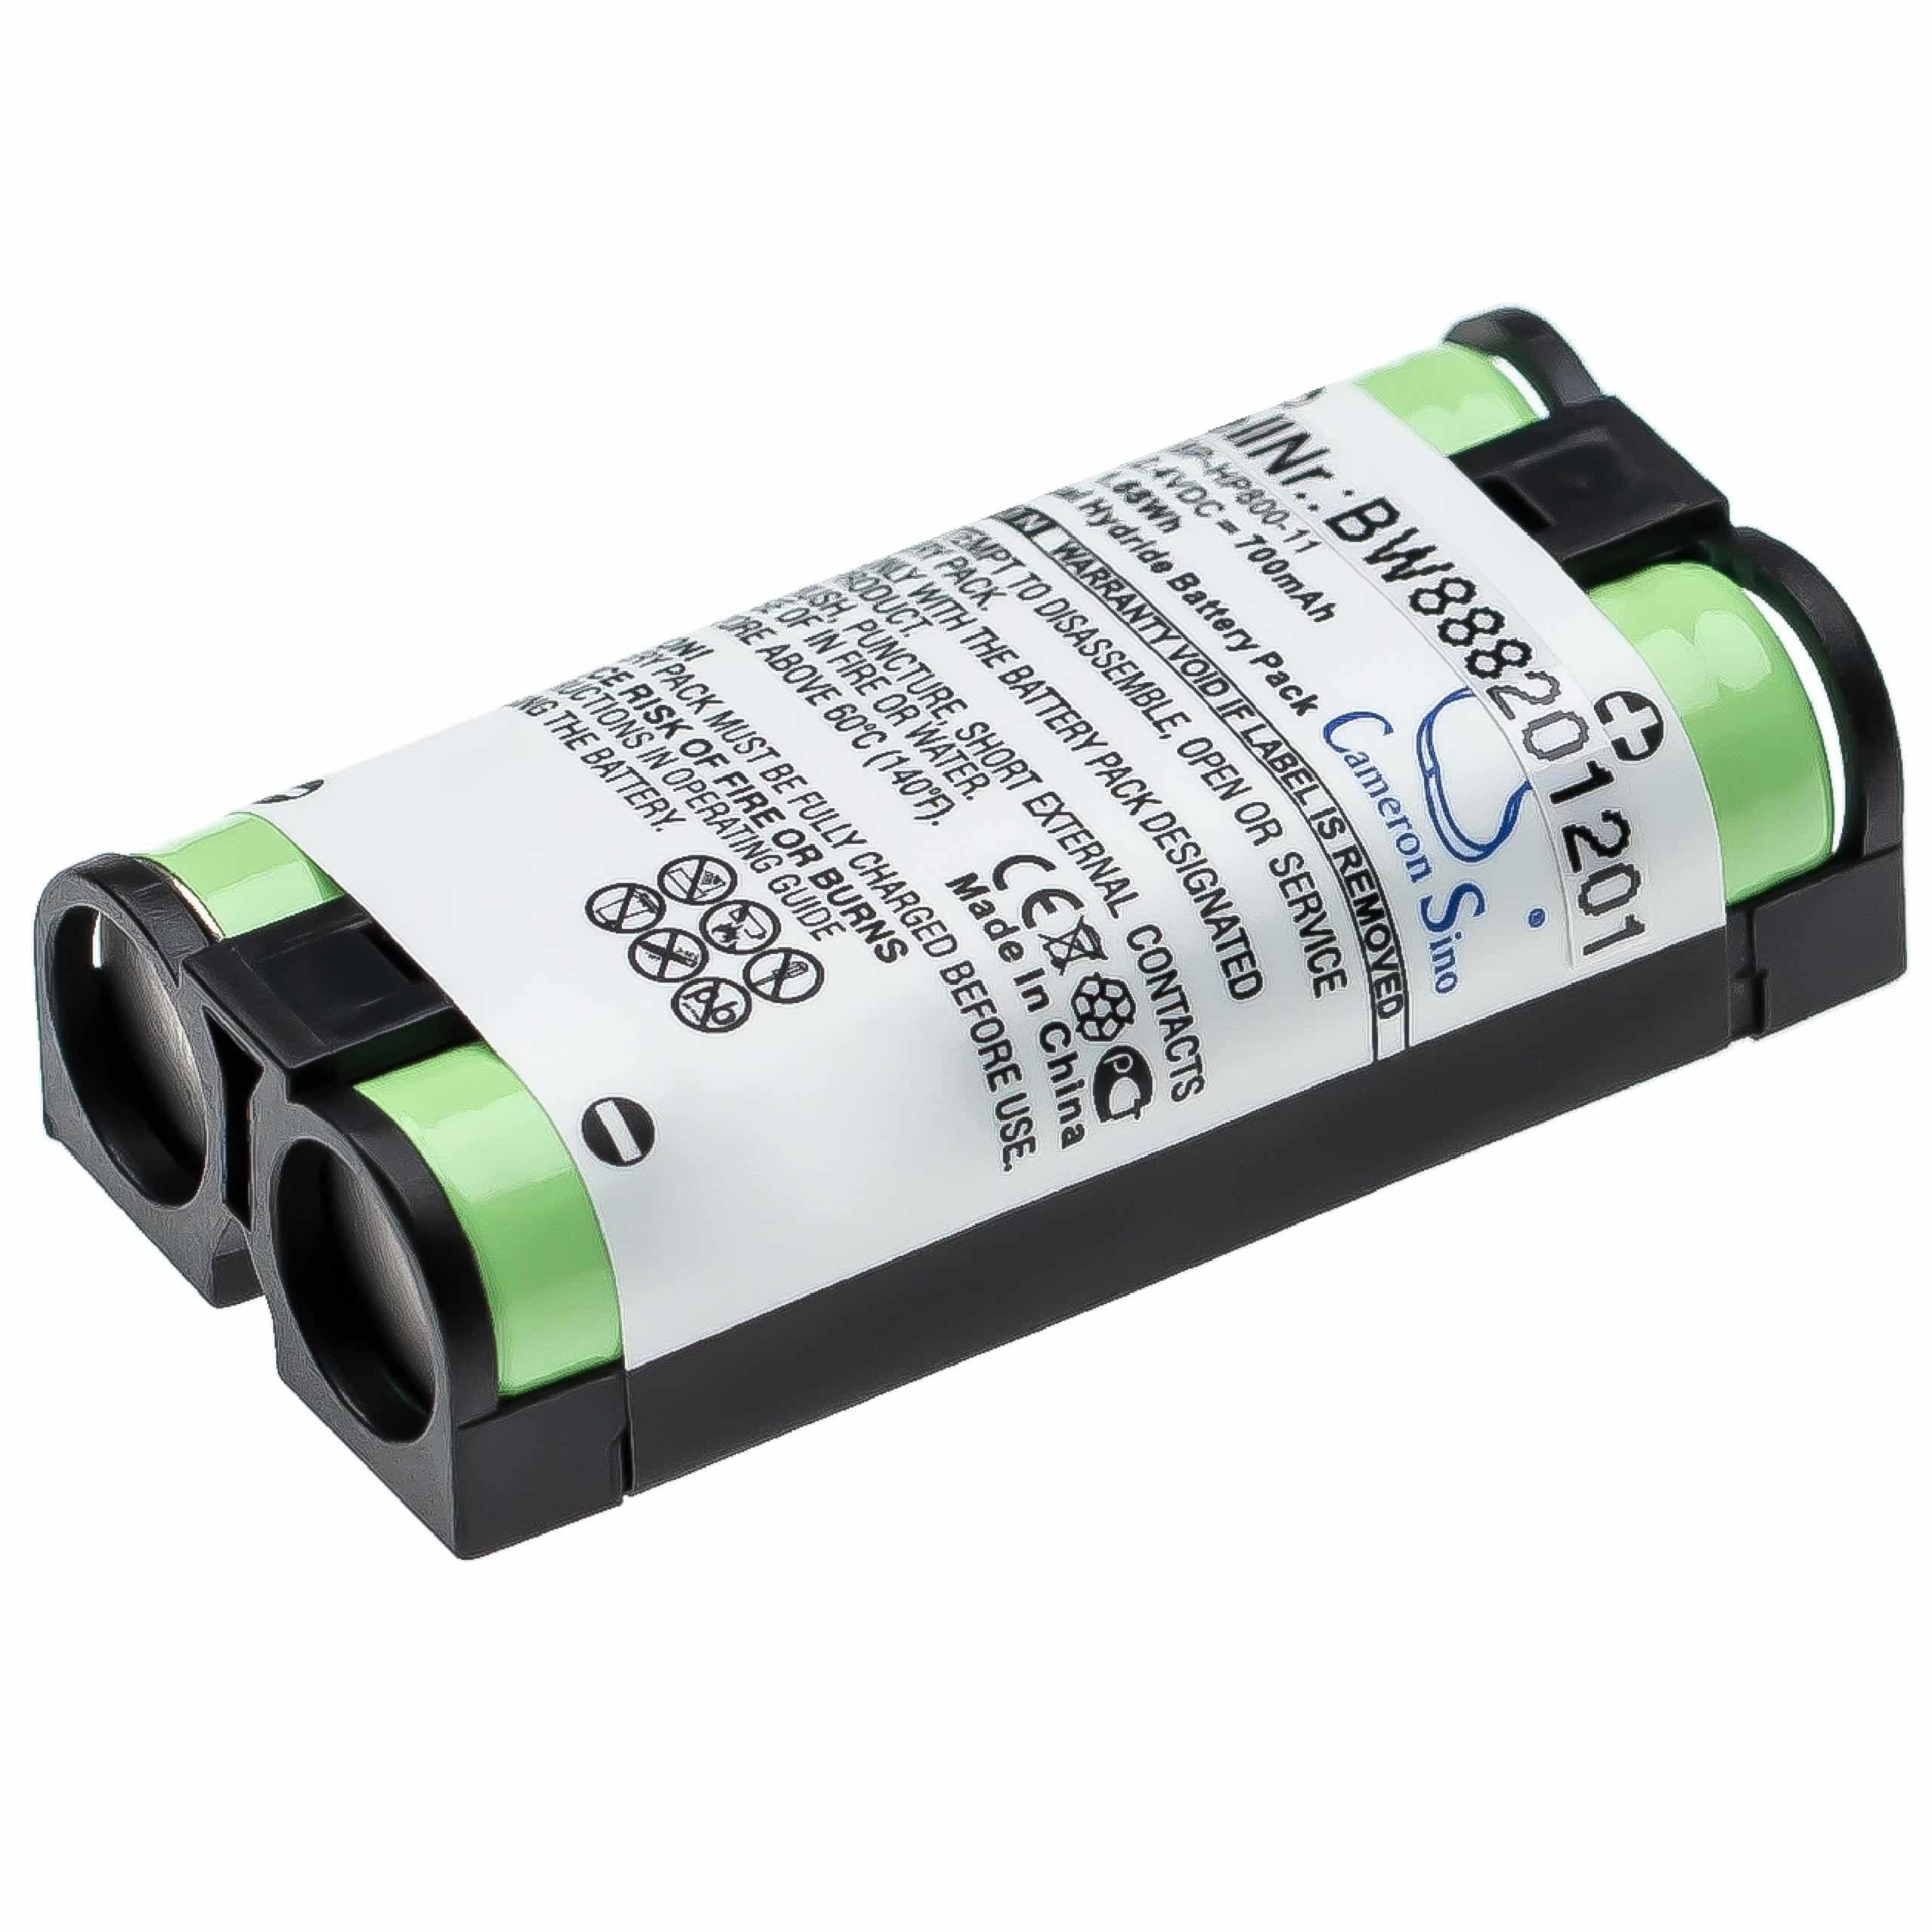 Batterie remplace Sony 9-885-216-11, 9-885-216-12, 9-885-218-43 pour casque audio - 700mAh 2,4V NiMH